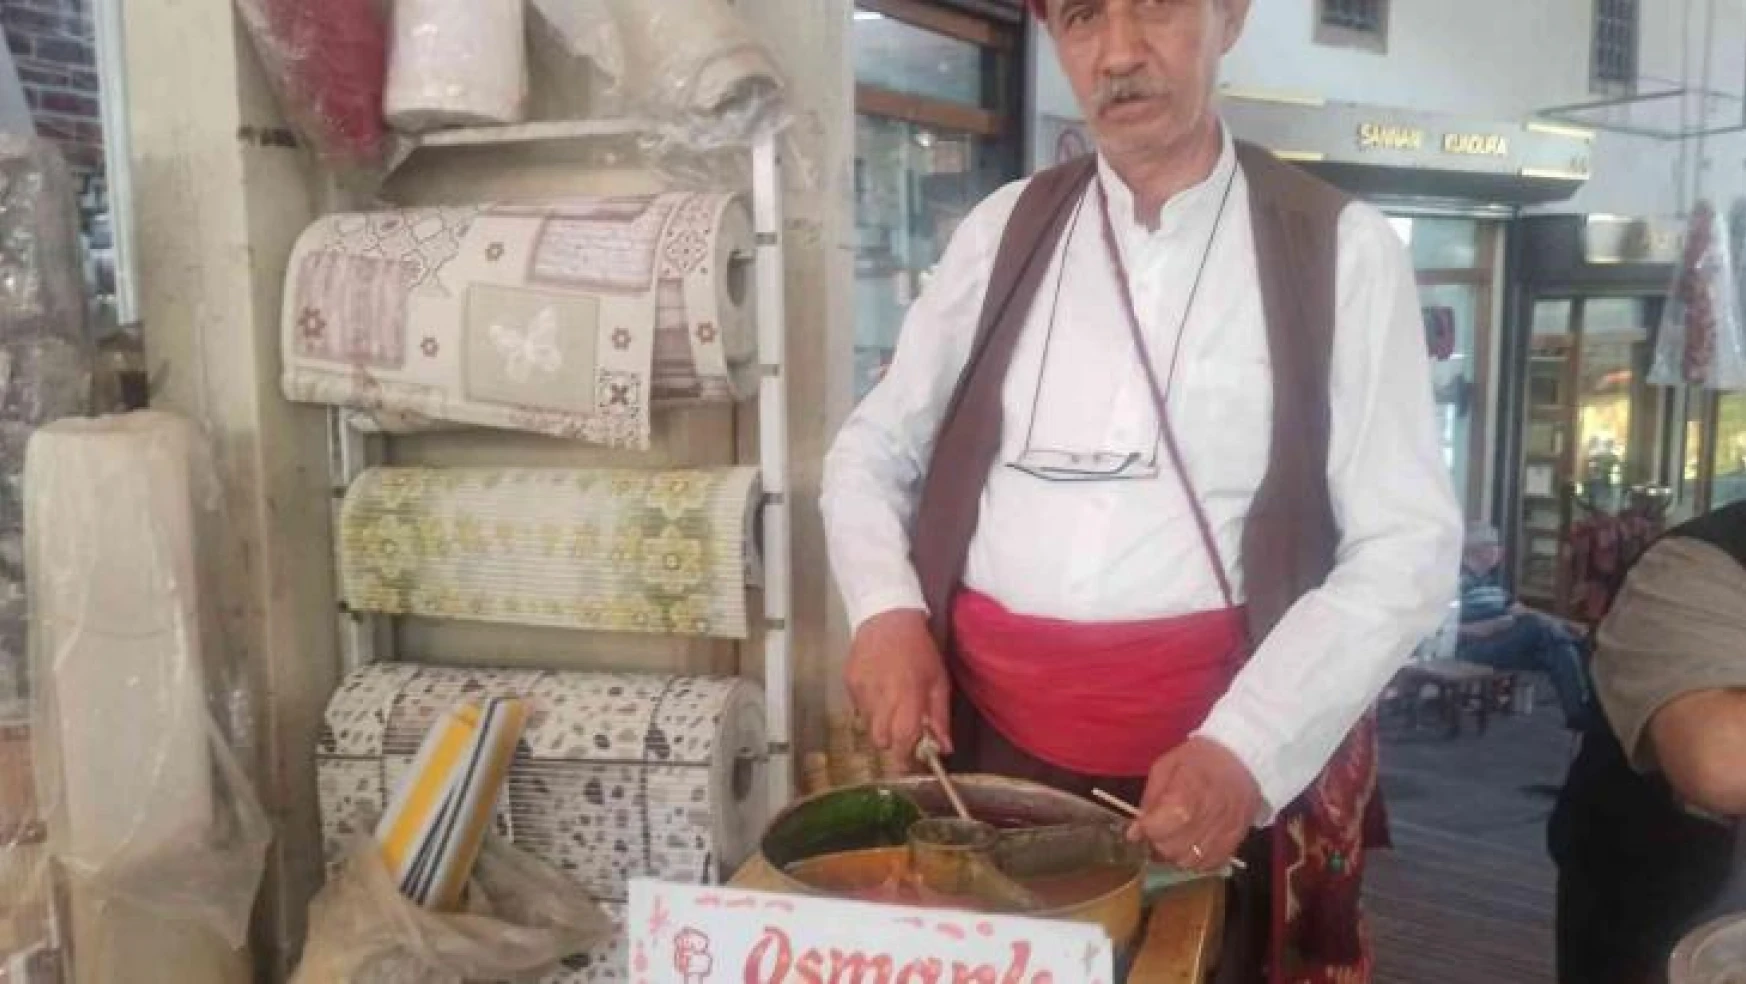 Osmanlı kültürünü yaşatmak için 'Osmanlı macunu' satıyor